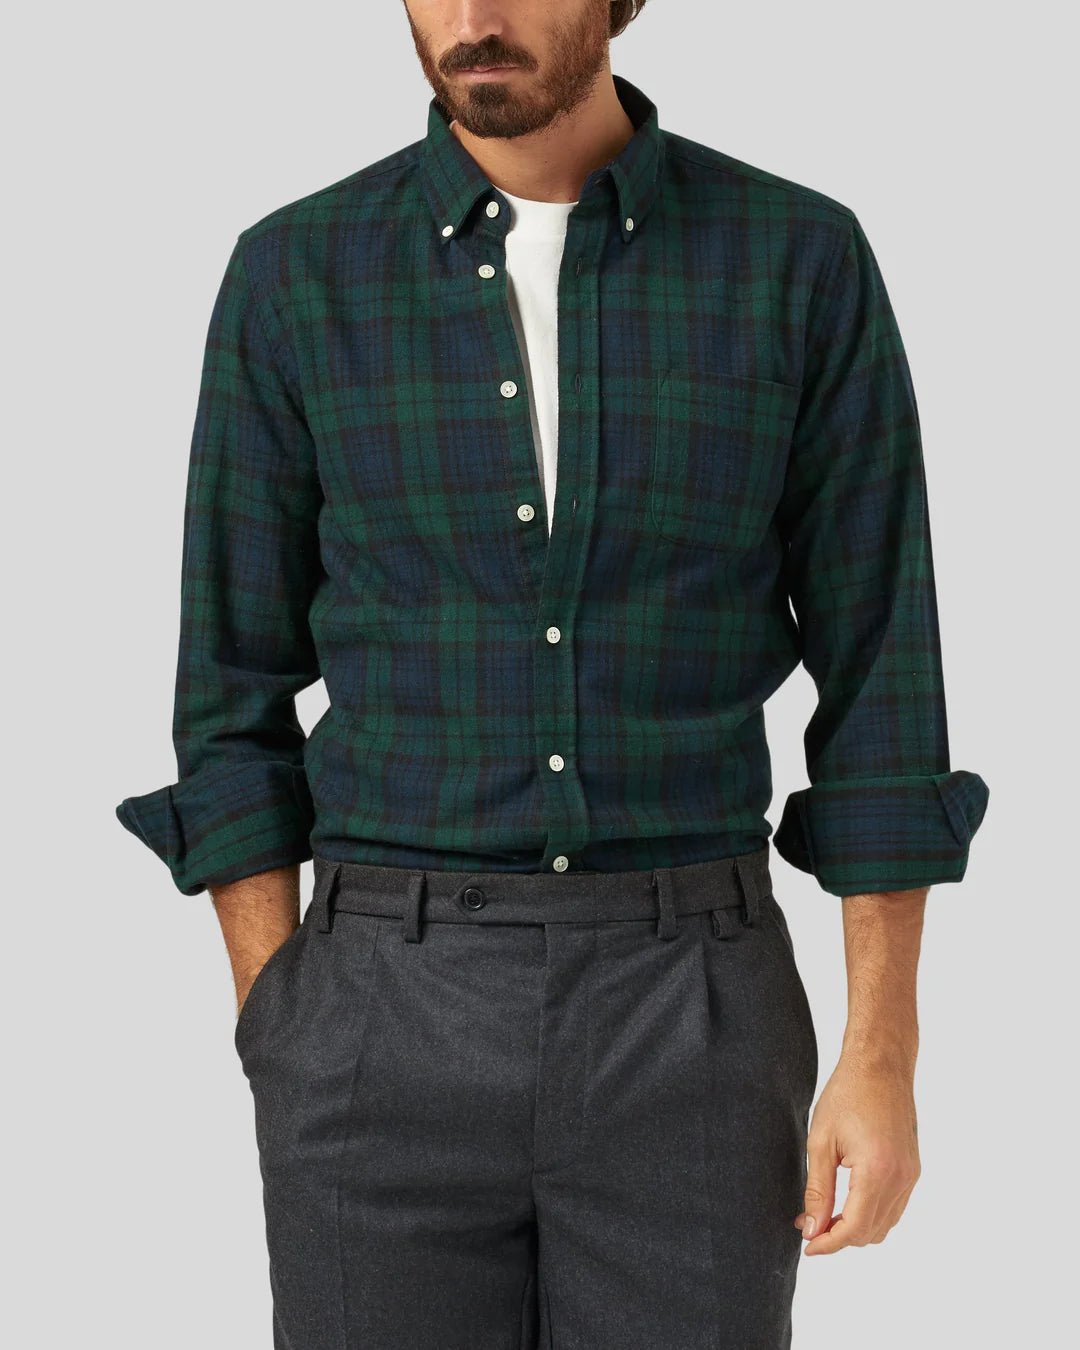 Bonfim Plaid Shirt - Portuguese Flannel - Danali - BONFIM-S